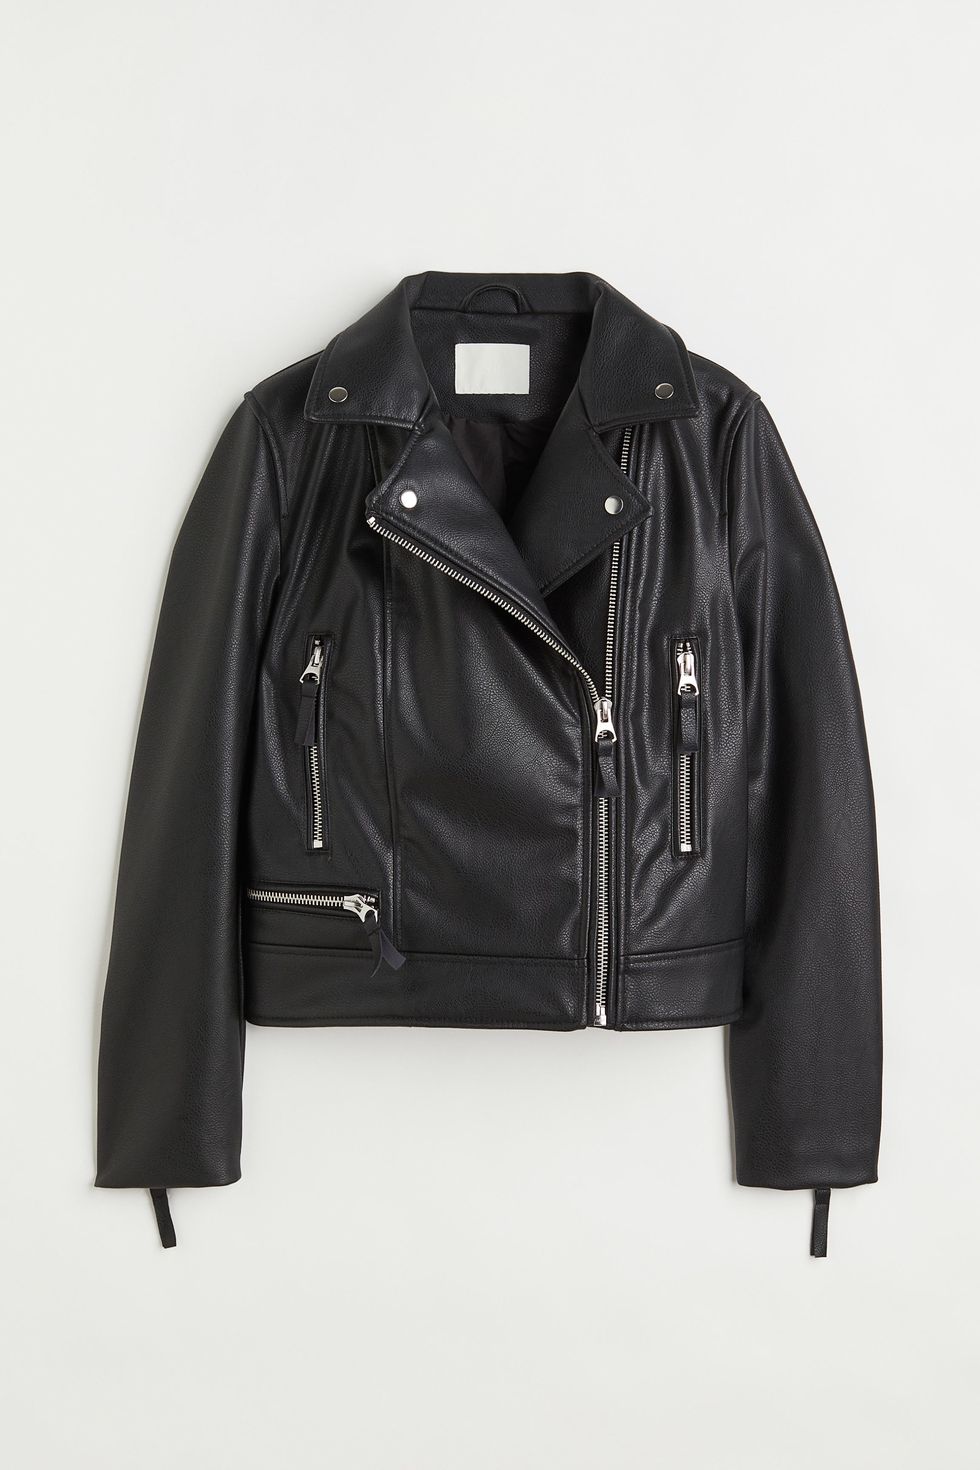 Strictly's Rose Ayling-Ellis wears leather jacket